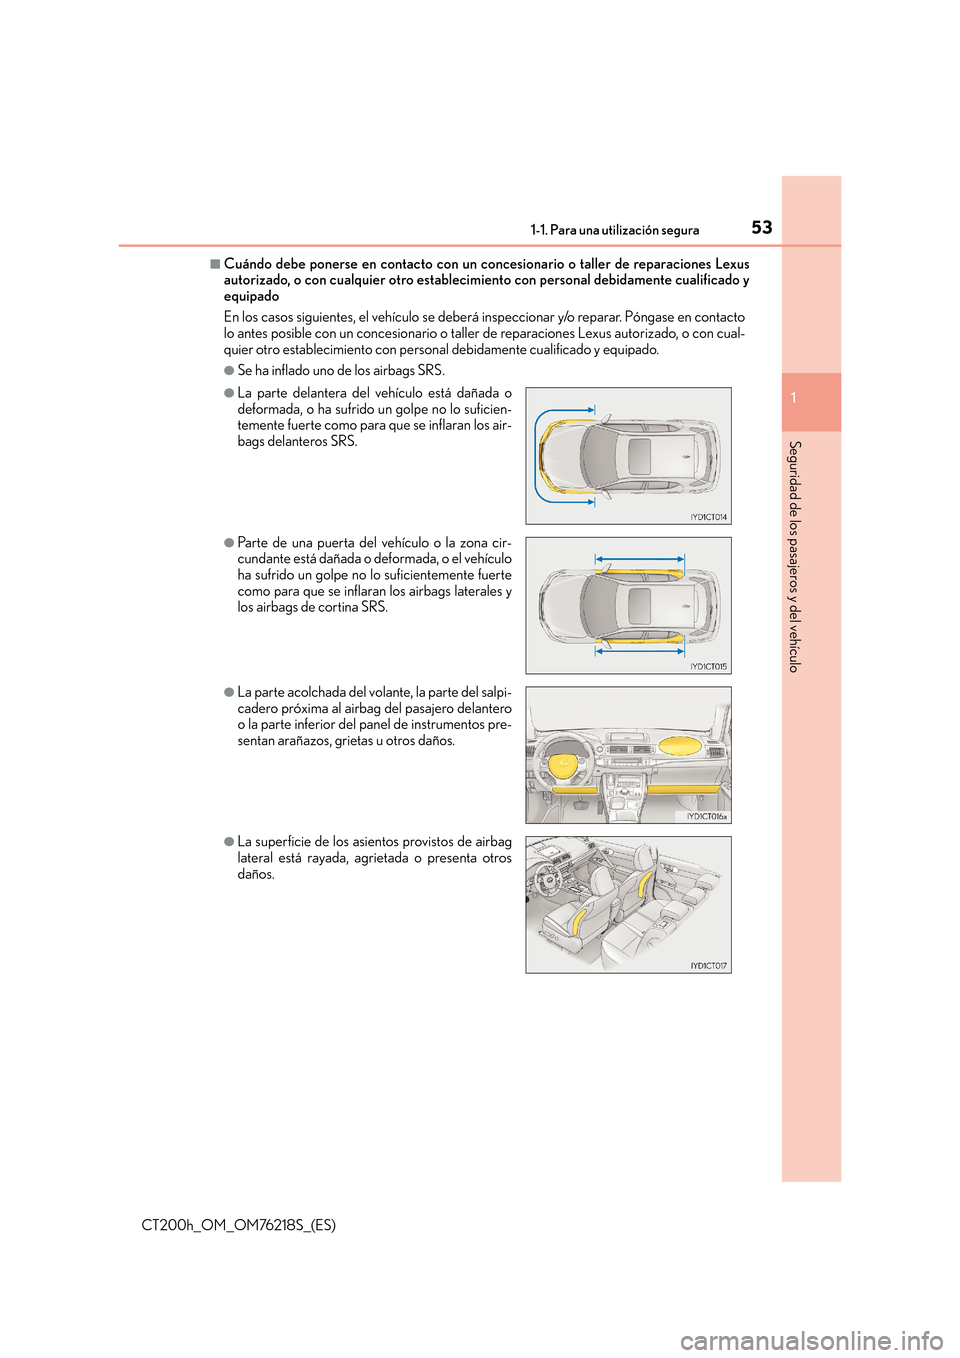 Lexus CT200h 2017  Manual del propietario (in Spanish) 531-1. Para una utilización segura
1
CT200h_OM_OM76218S_(ES)
Seguridad de los pasajeros y del vehículo
■Cuándo debe ponerse en contacto con un concesionario o taller de reparaciones Lexus
autoriz